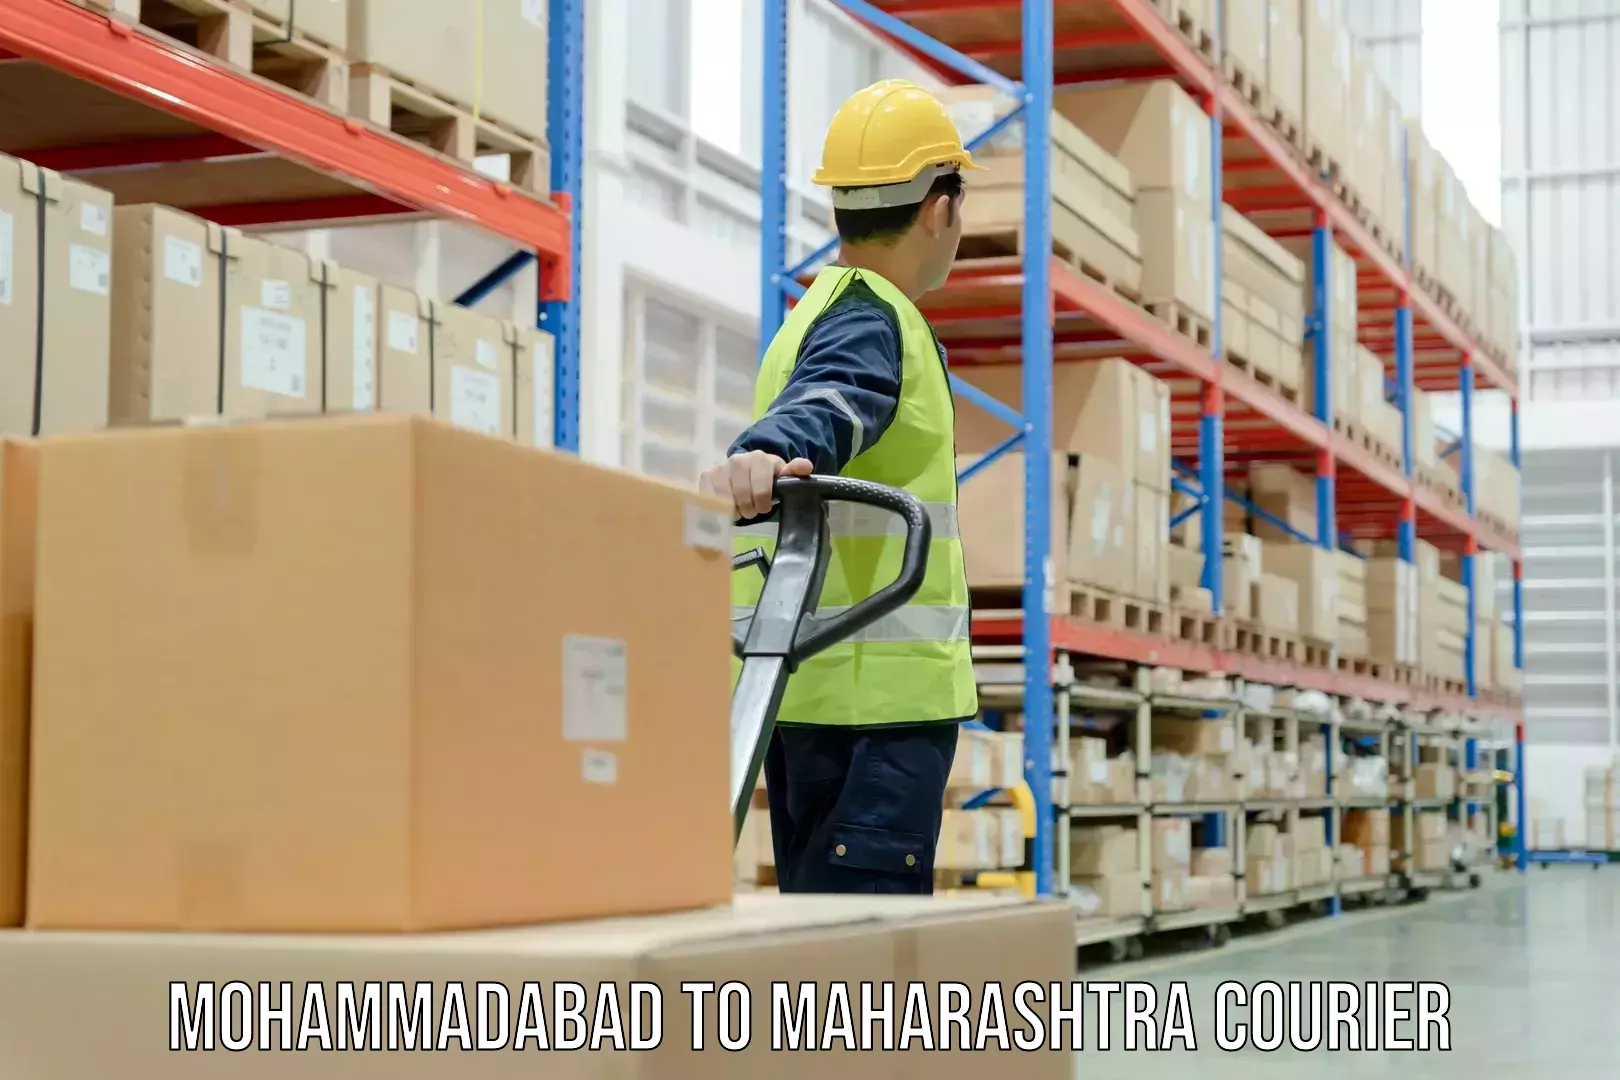 Overnight delivery services Mohammadabad to Maharashtra